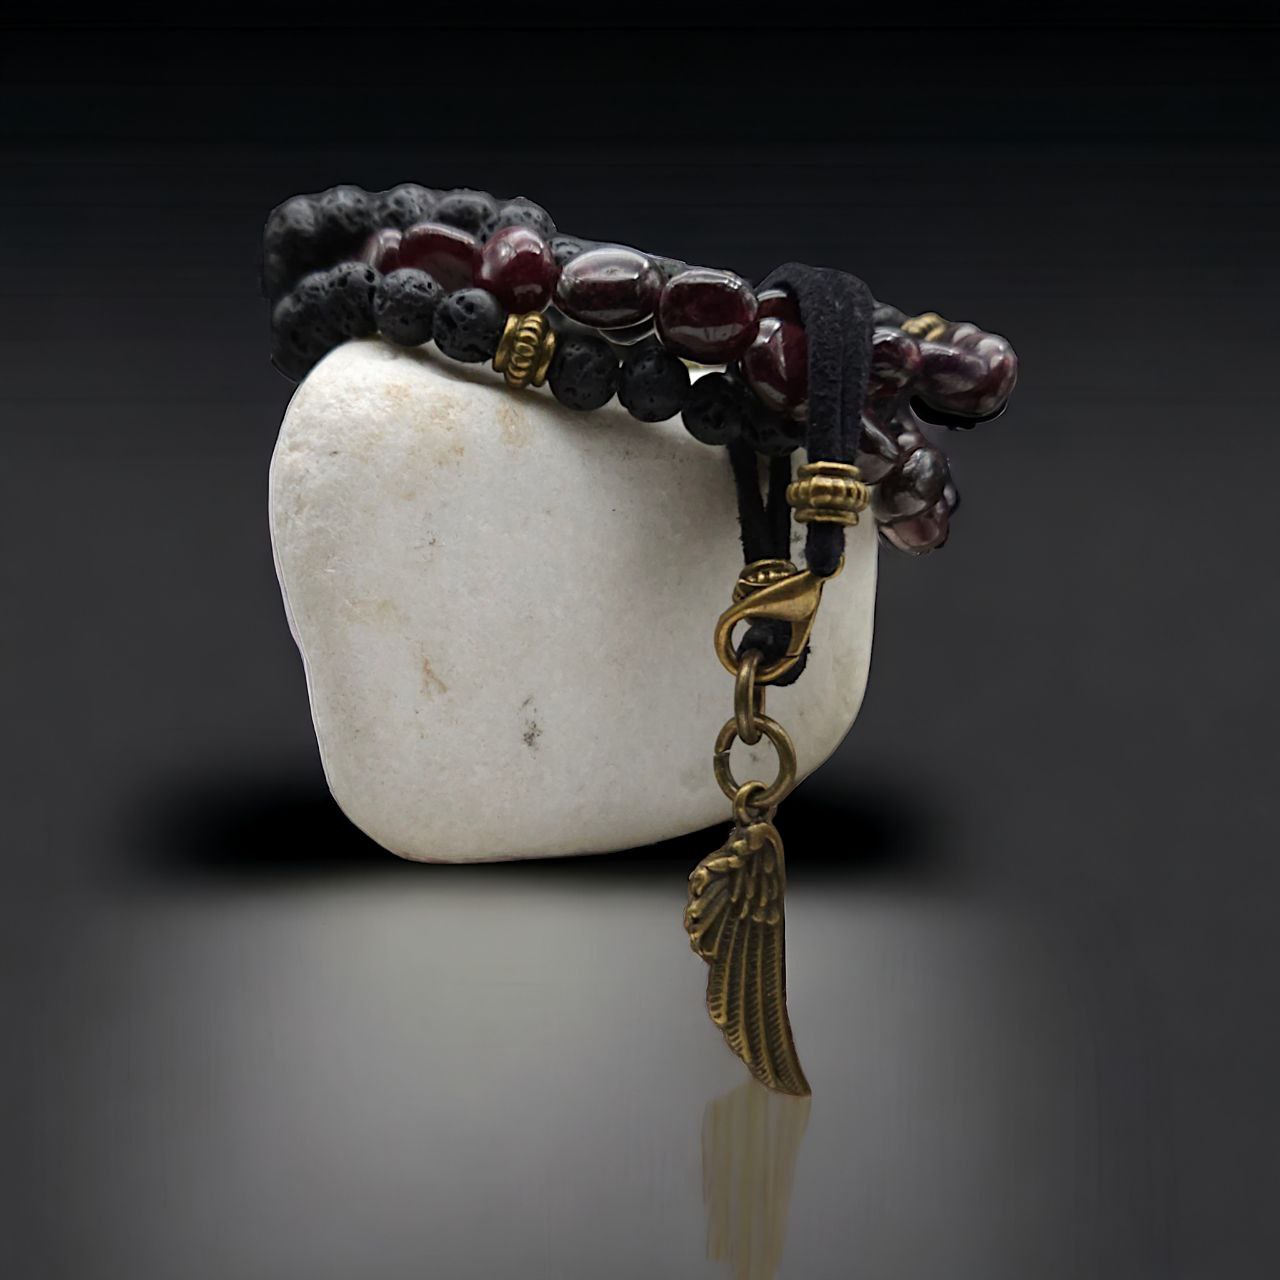 Bracelets of natural stones